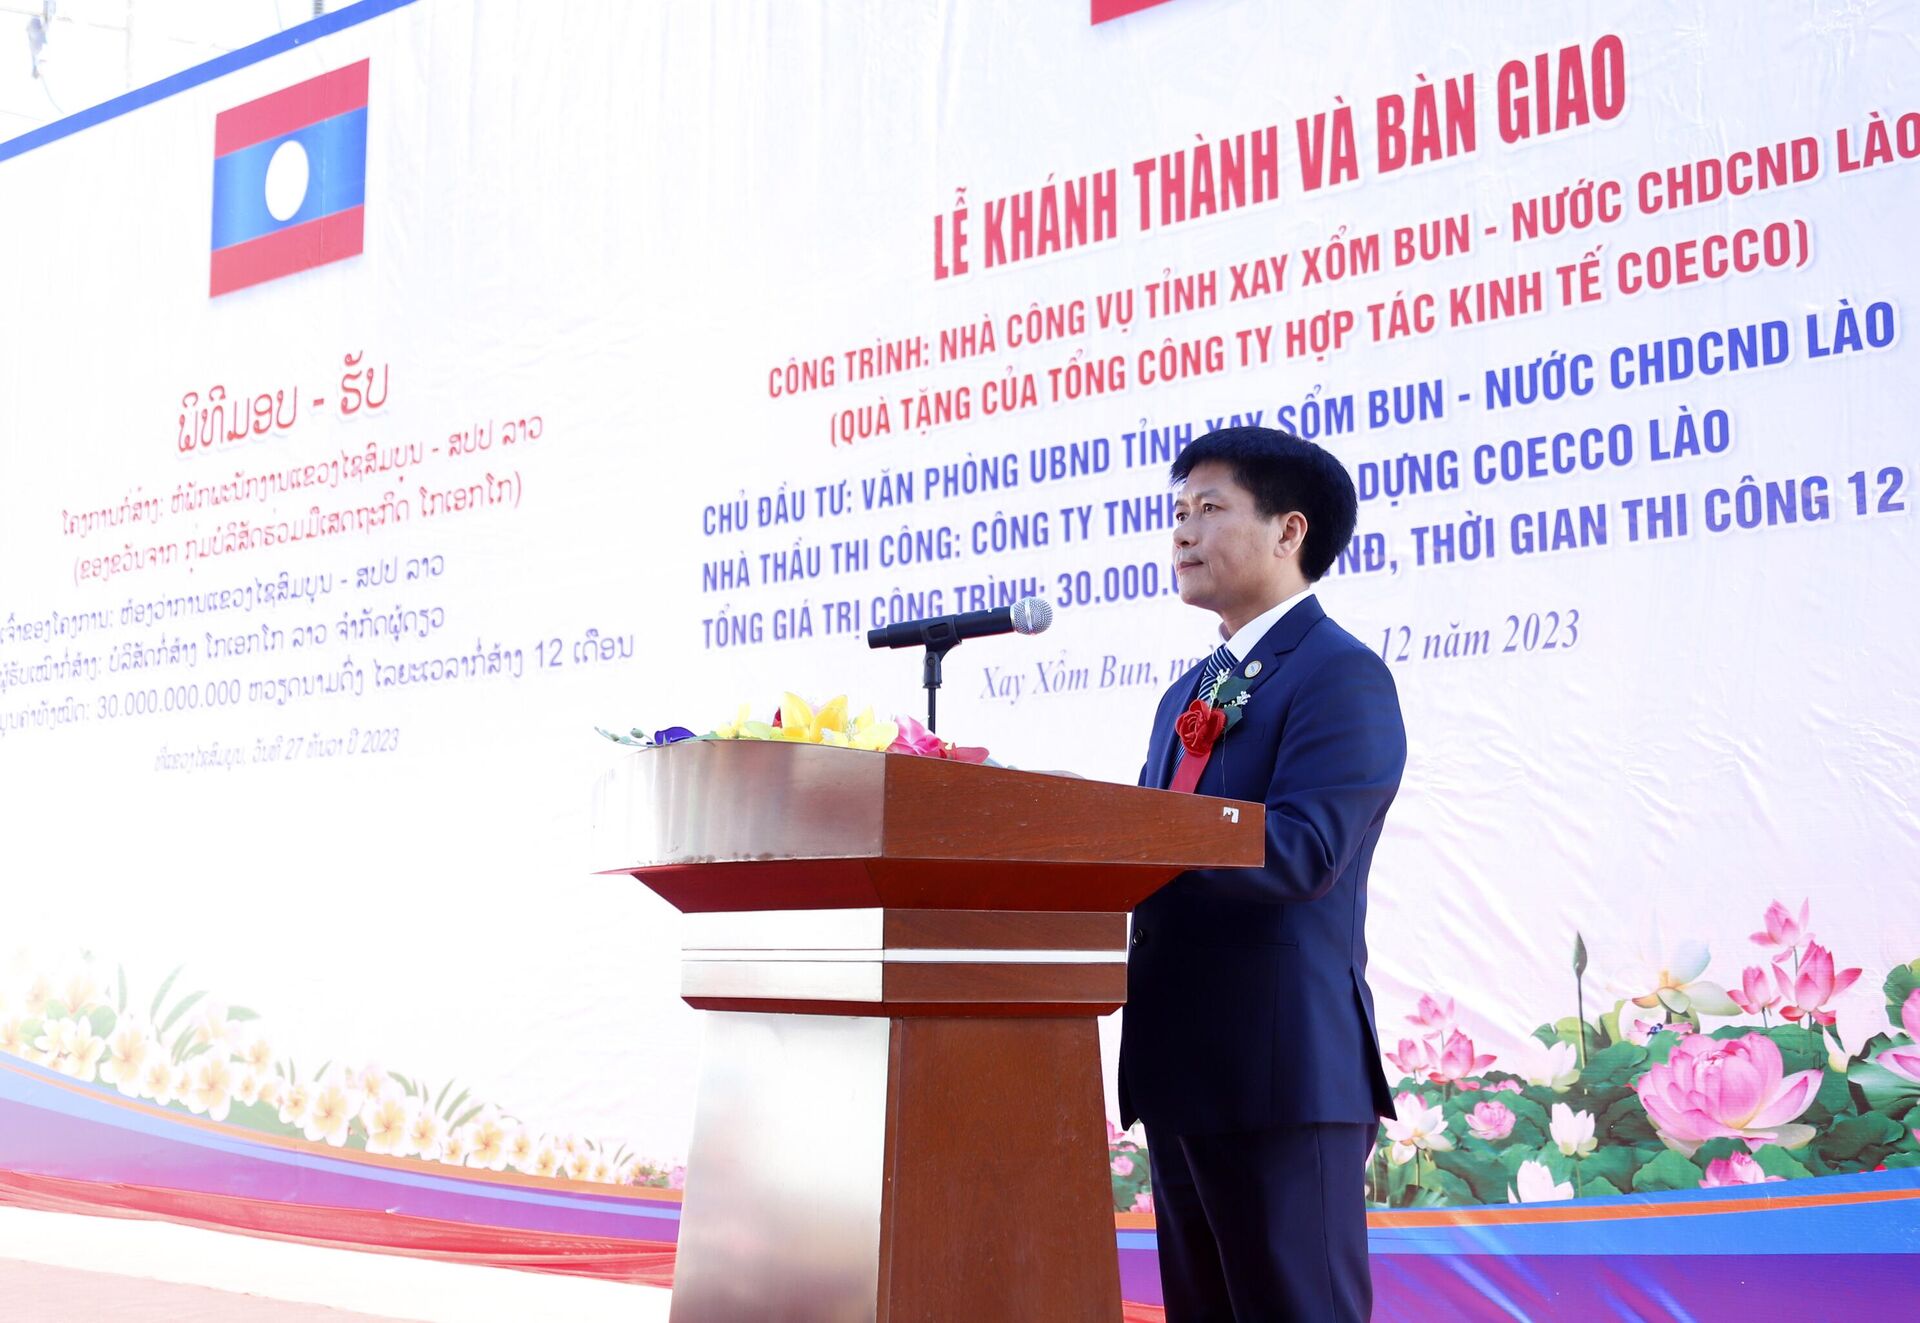 Ông Phạm Hùng Thắng, Chủ tịch Tổng Công ty Hợp tác Kinh tế COECCO, đang phát biểu tại sự kiện. - Sputnik Việt Nam, 1920, 28.12.2023